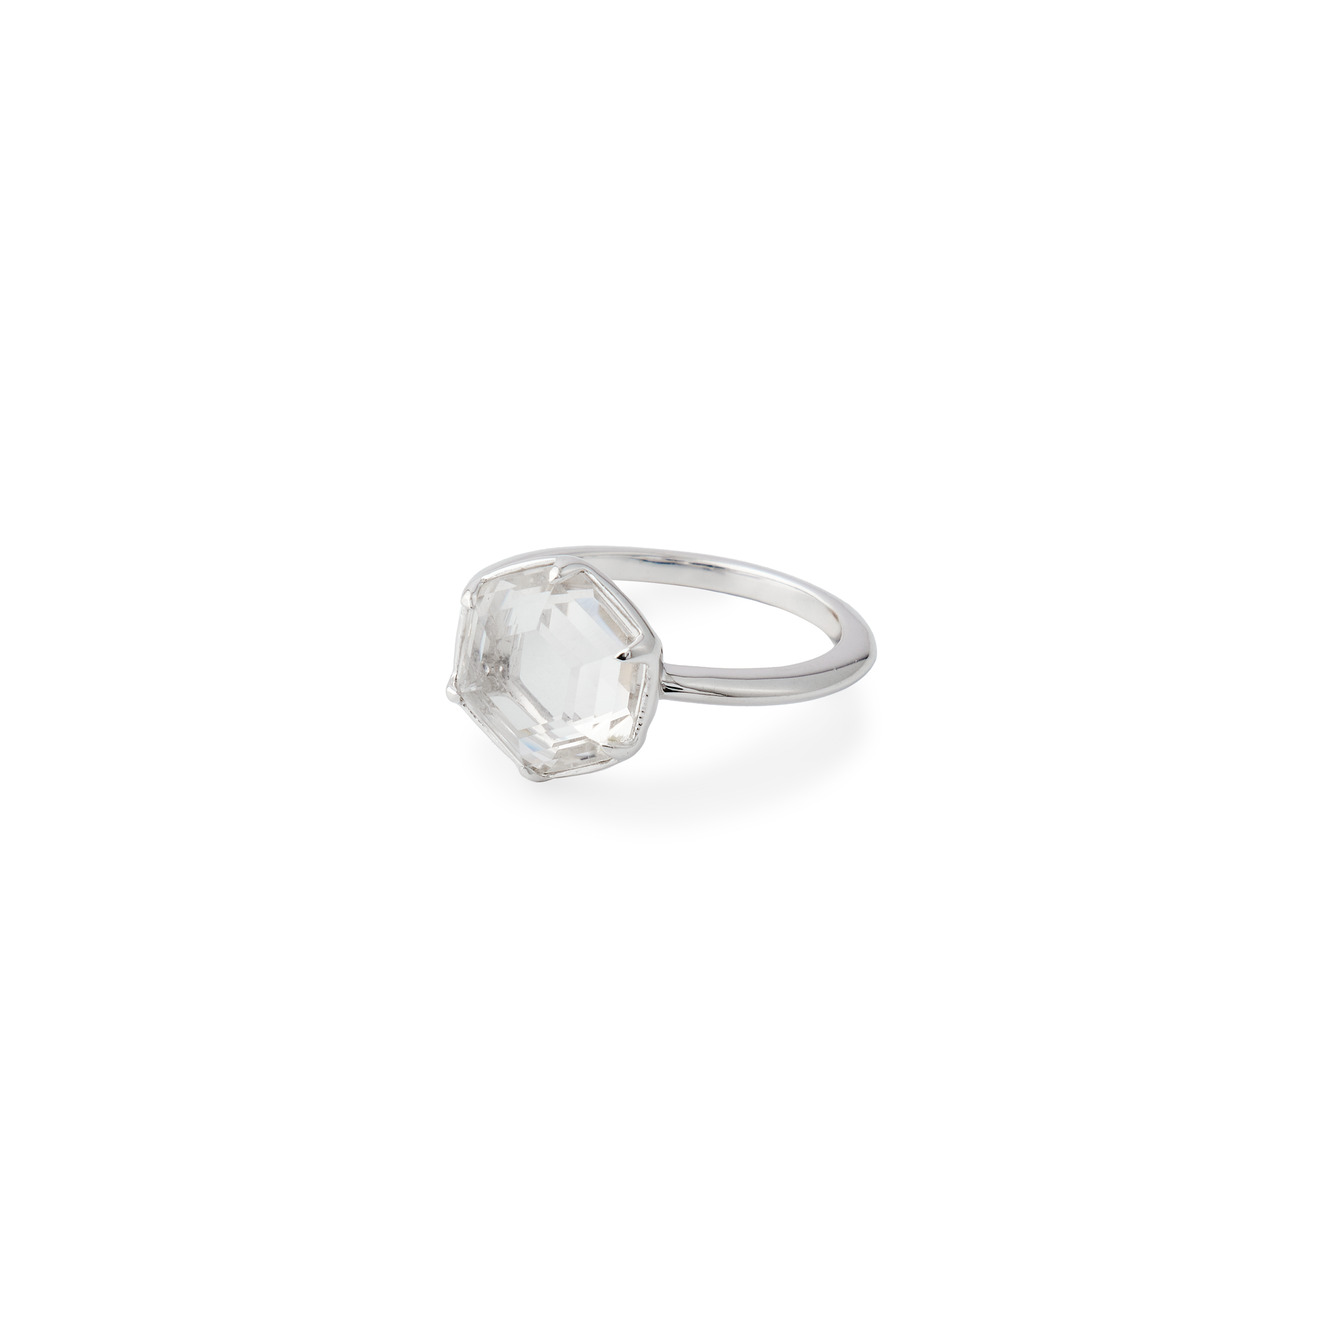 Wisteria Gems Серебряное кольцо тонкое с крупным шестиугольным горным хрусталем